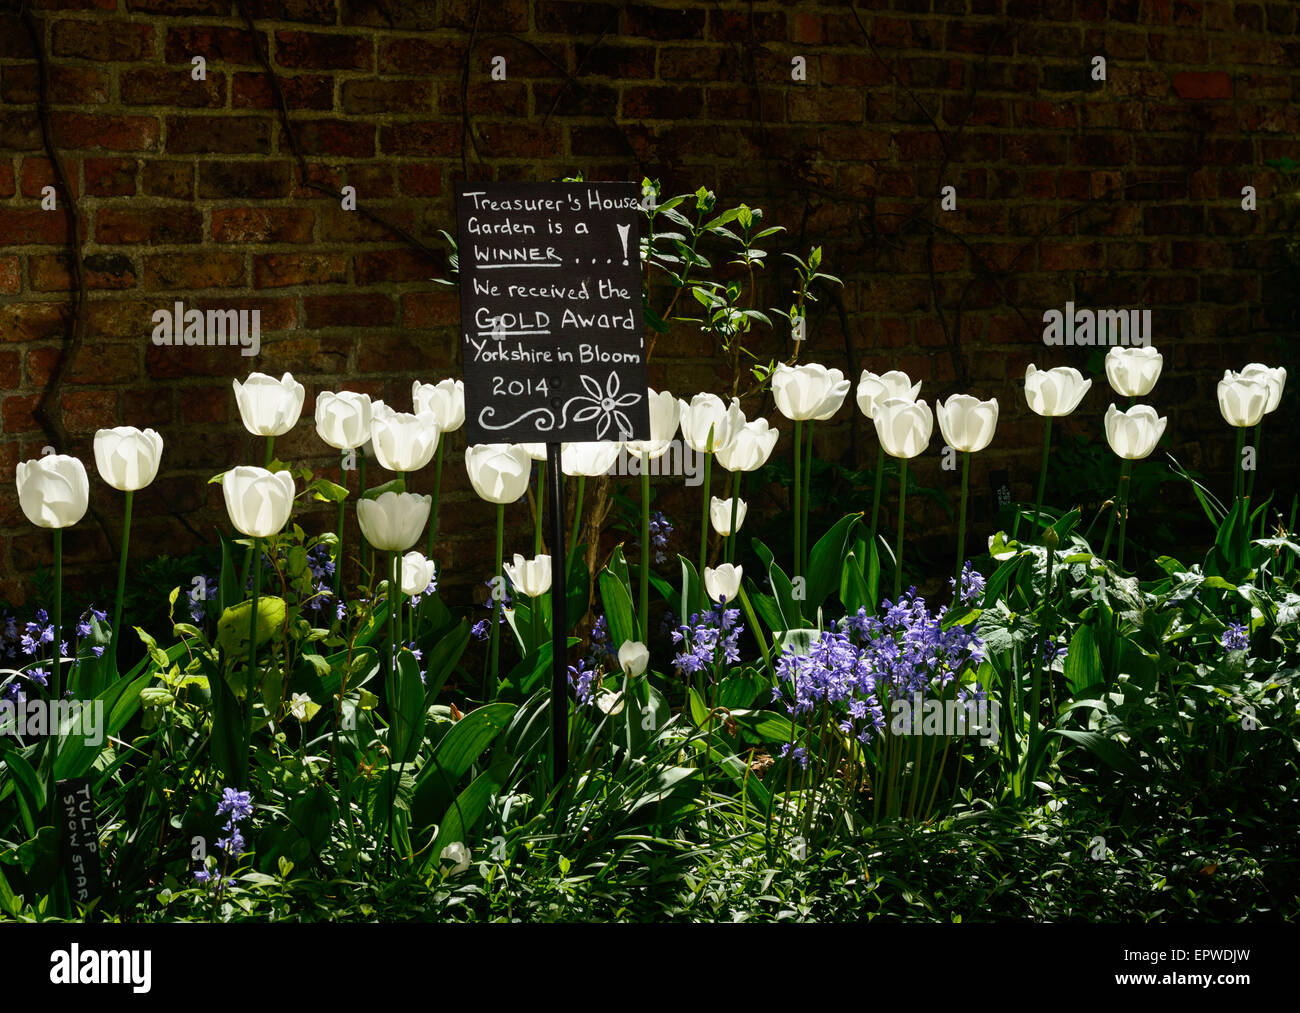 Un segno del Tesoriere's House Gardens indicando una vittoria nel 2014 nella "Yorkshire in Bloom" awards Foto Stock